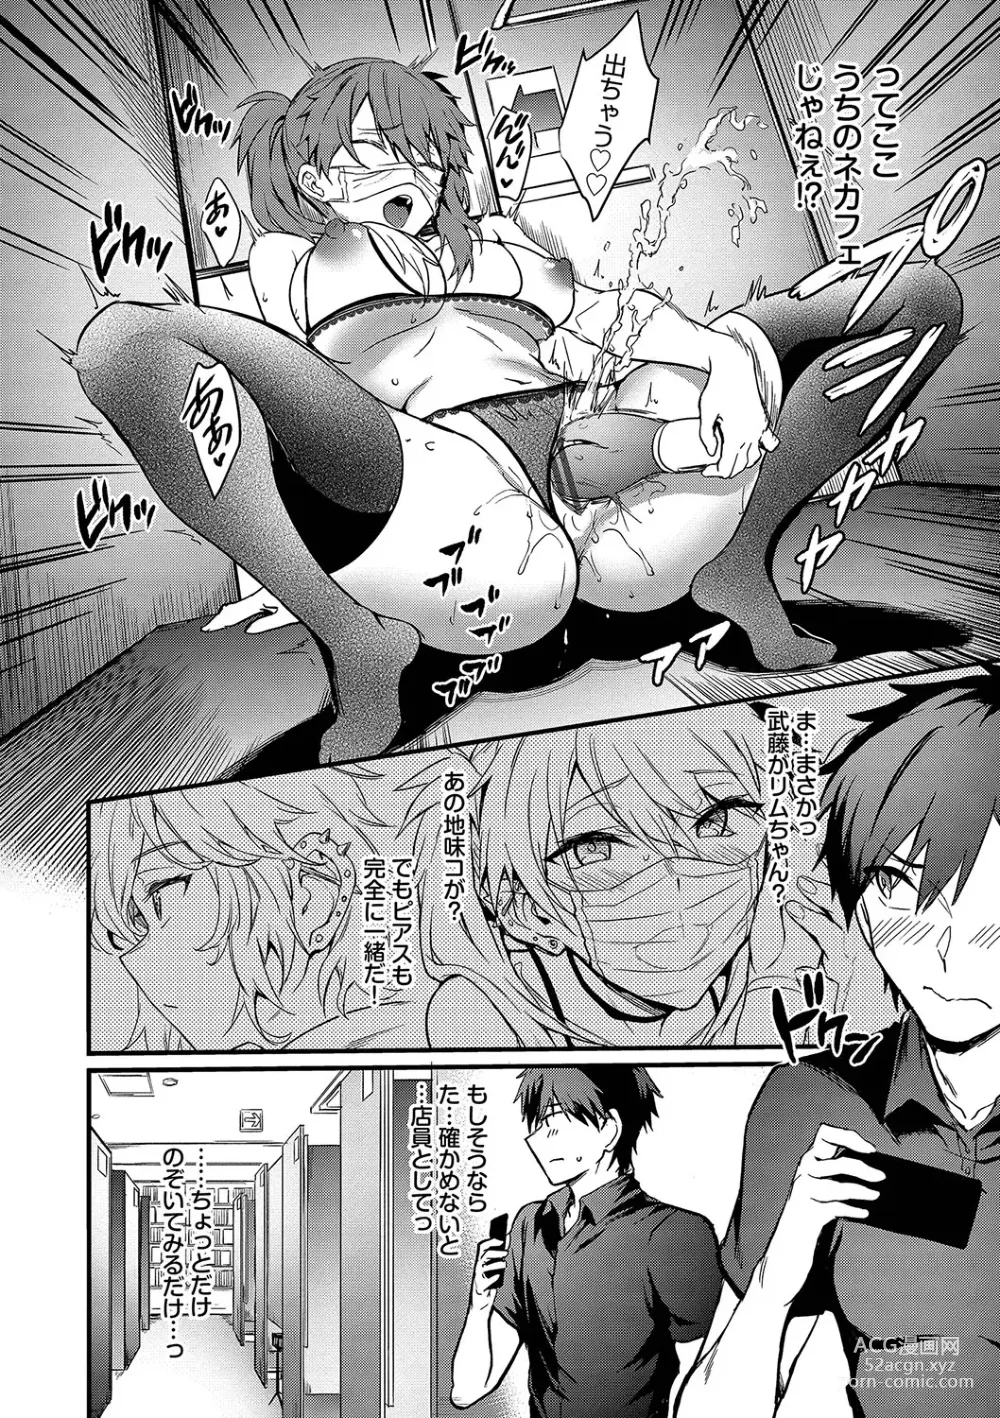 Page 9 of manga Bitch Bitch